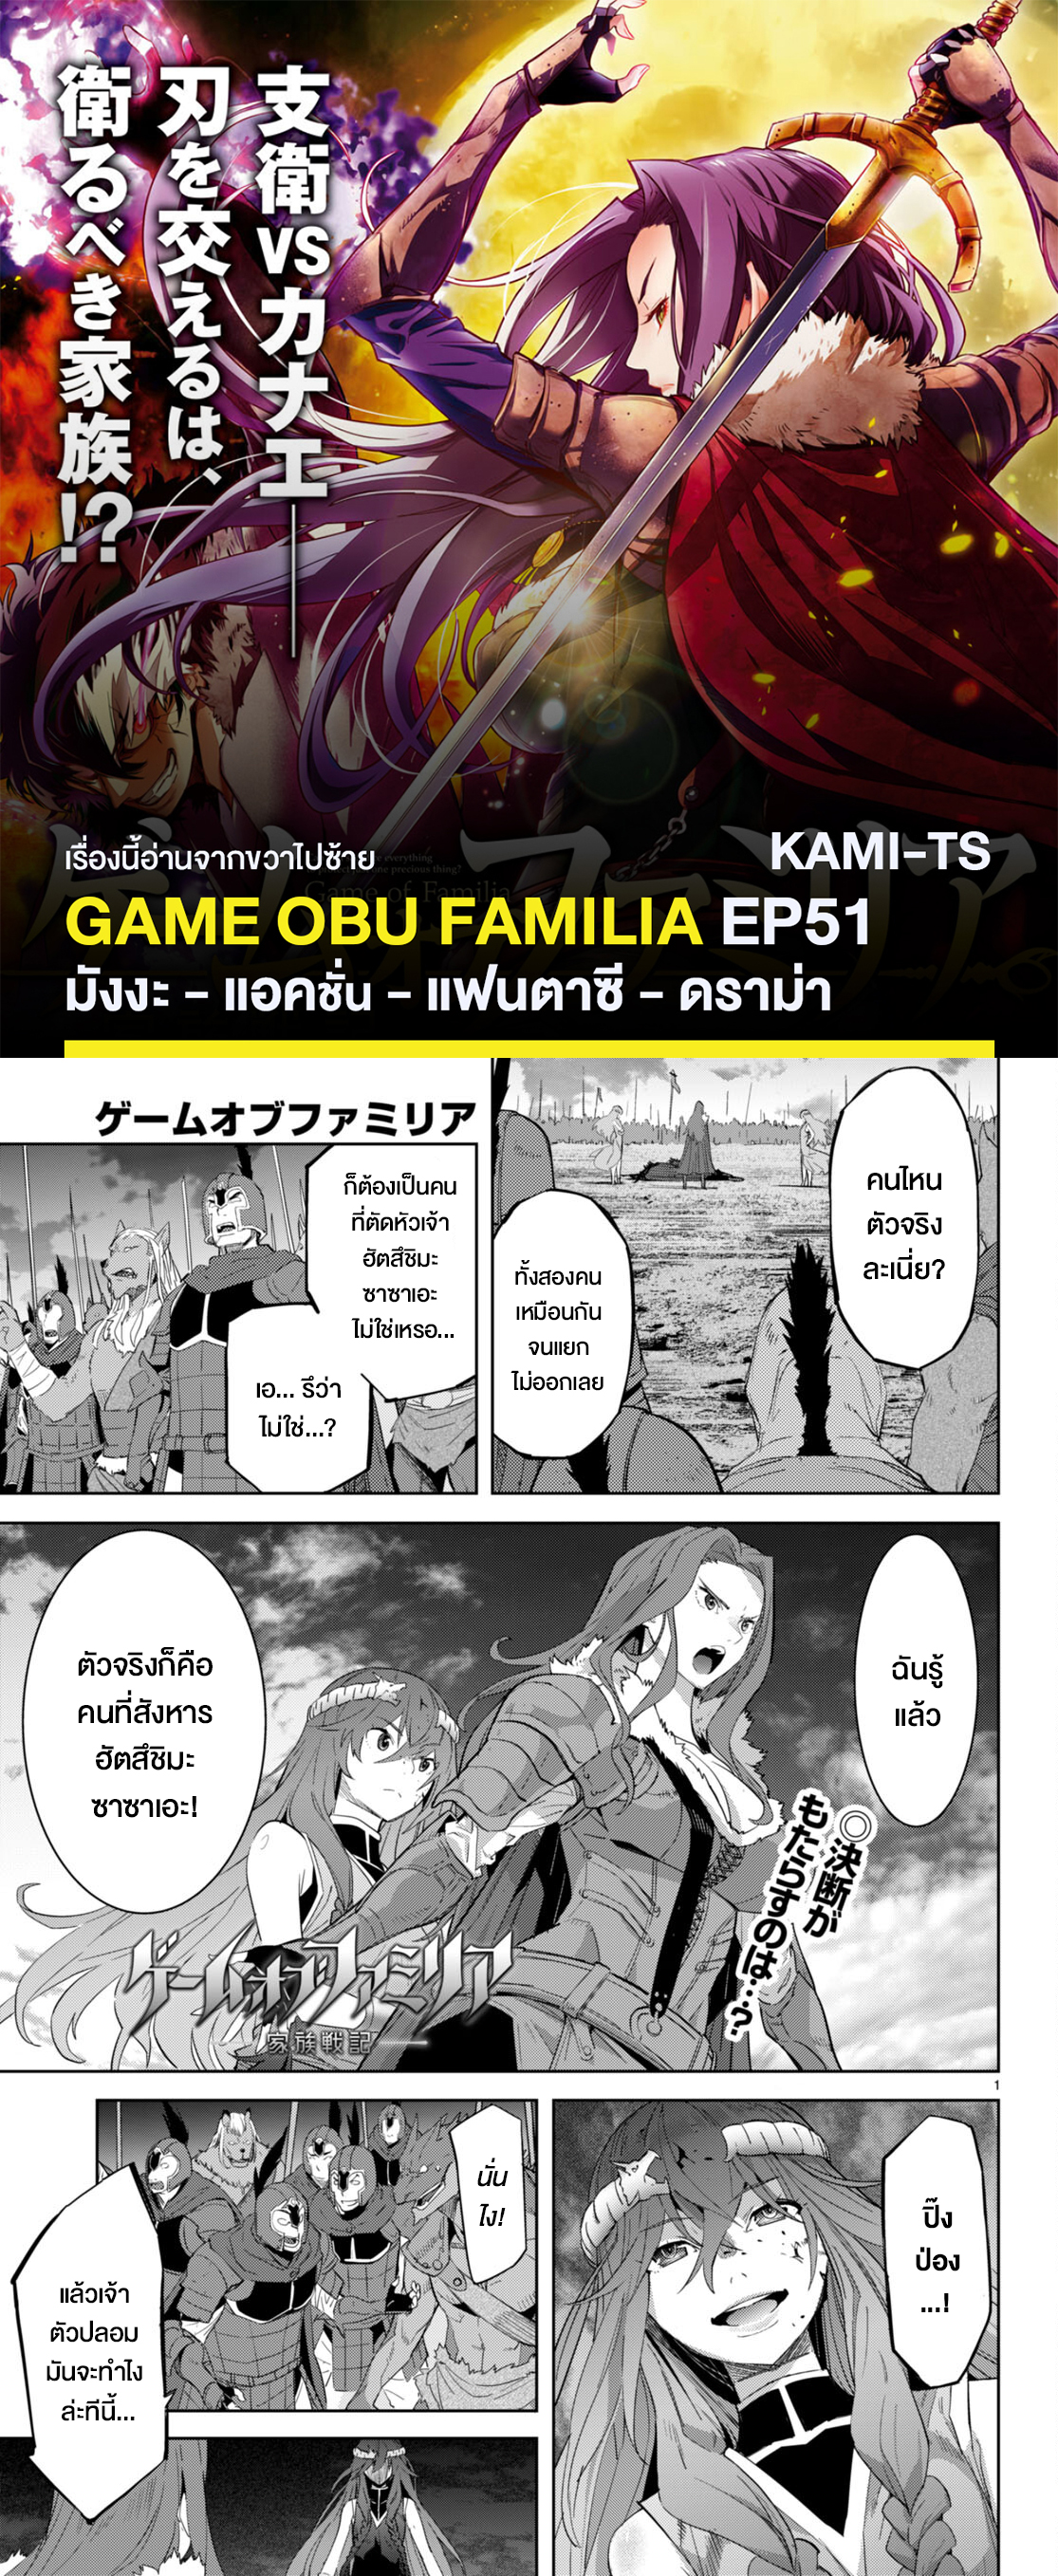 อ่านการ์ตูน Game obu Familia Family Senki 51 ภาพที่ 1